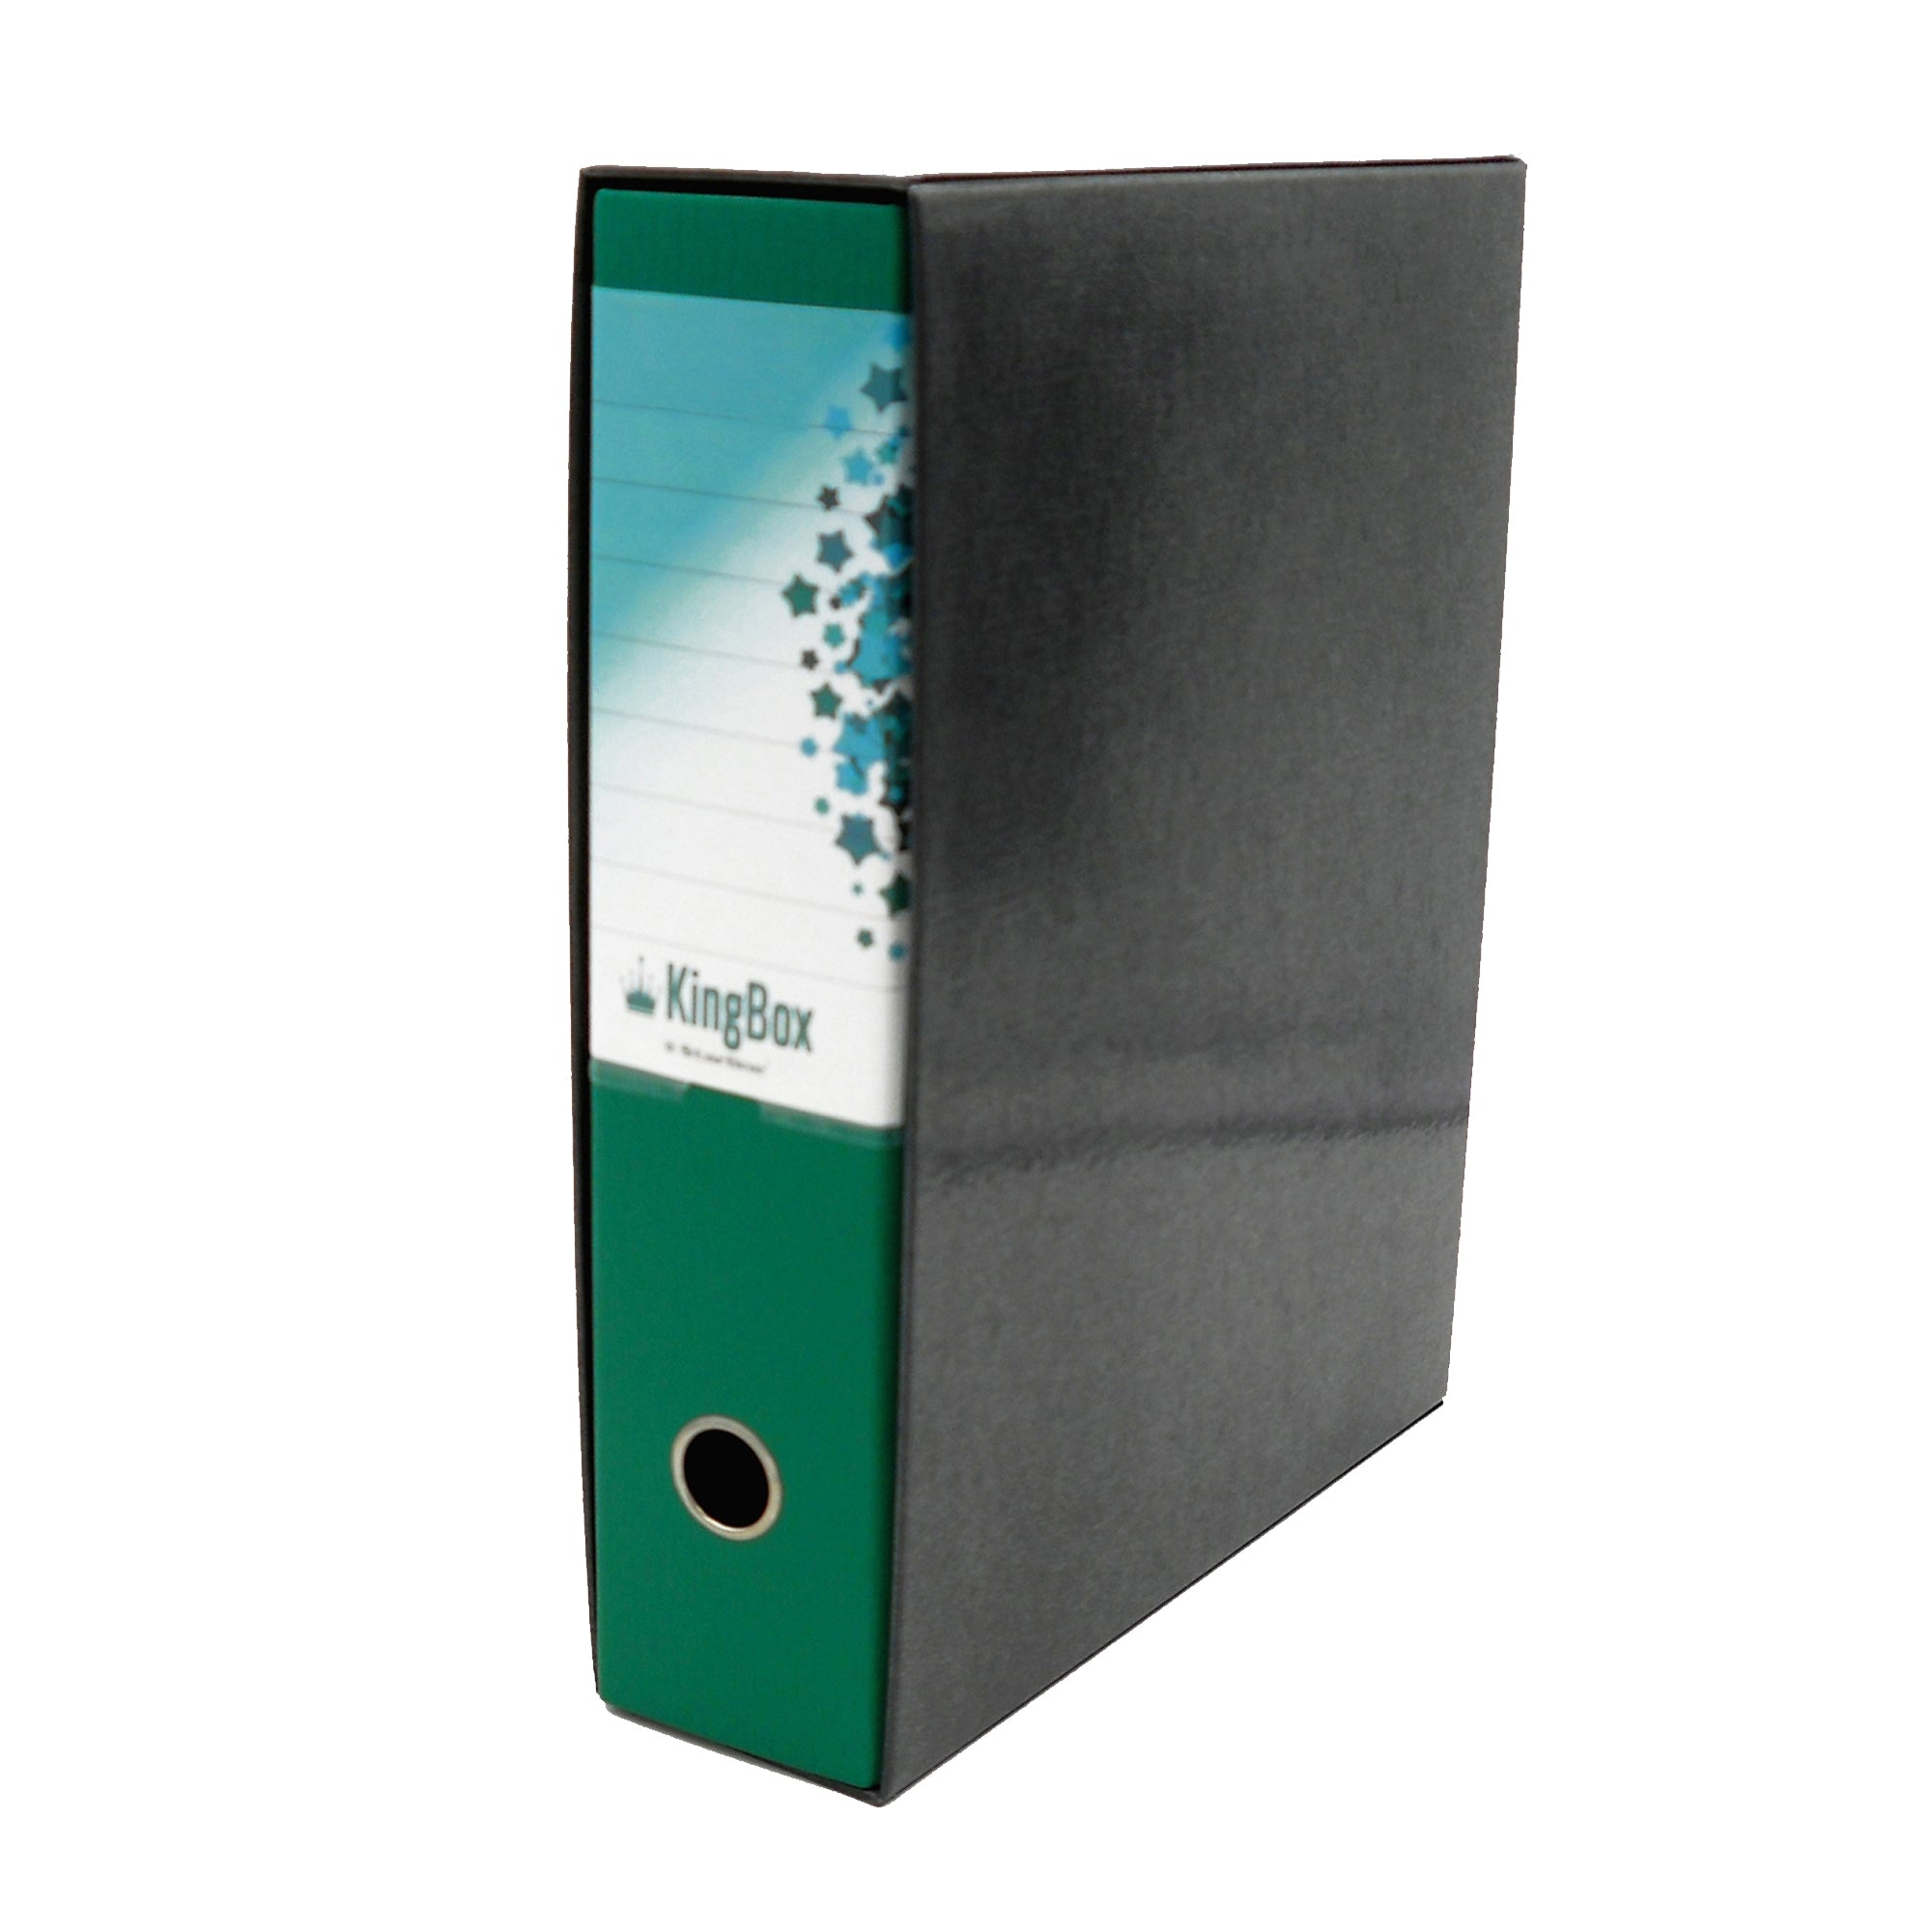 starline-registratore-kingbox-f-to-protocollo-dorso-8cm-verde